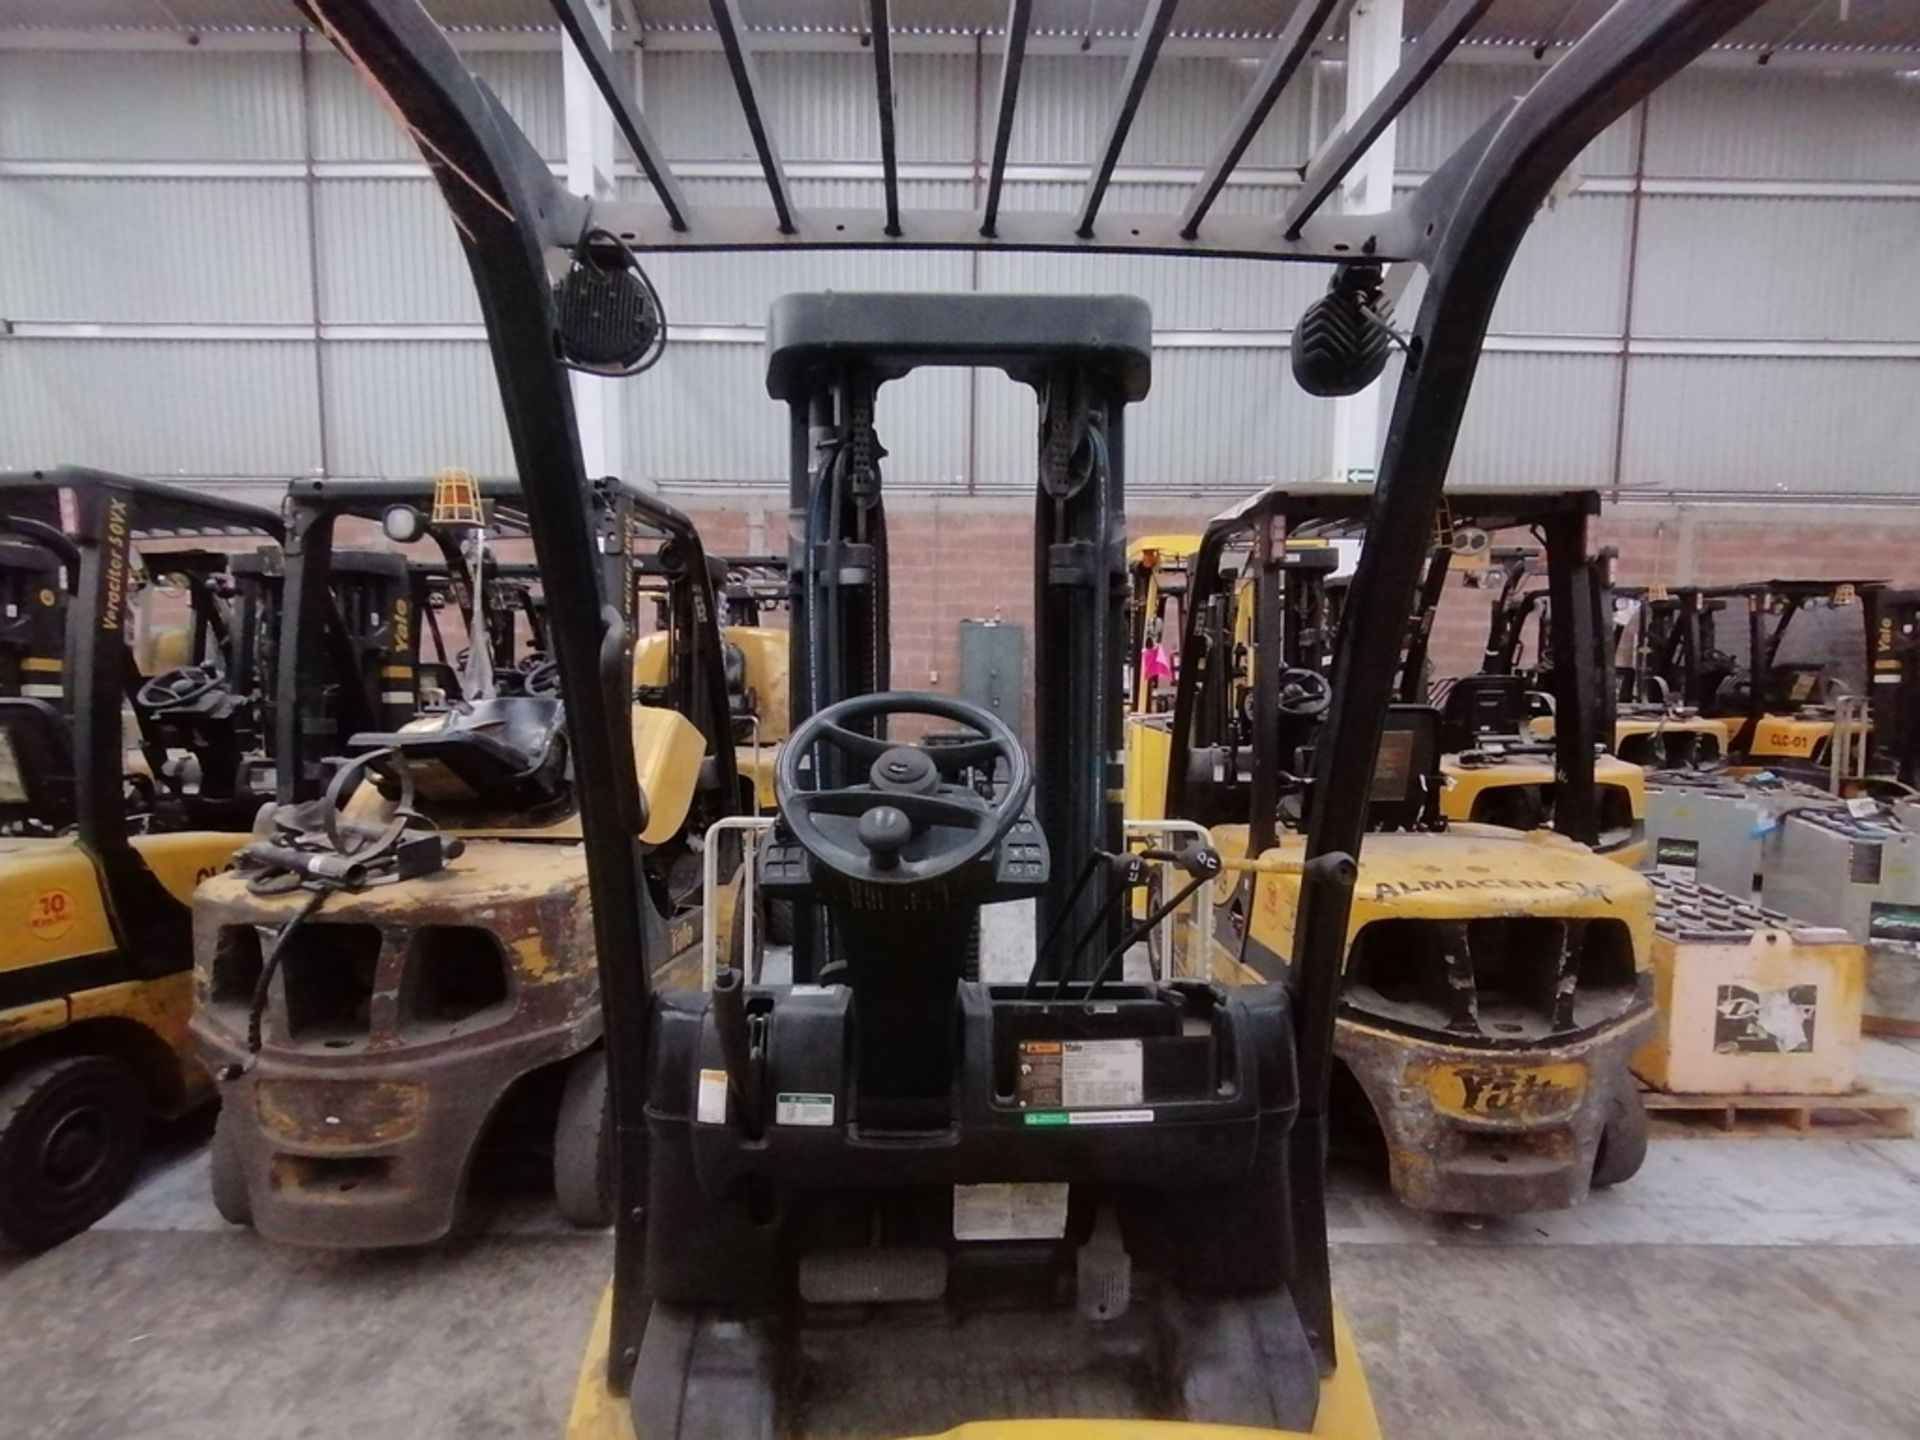 2016 Yale Forklift, model GLP050VXNDAE090, 4,750 lb capacity - Image 20 of 45